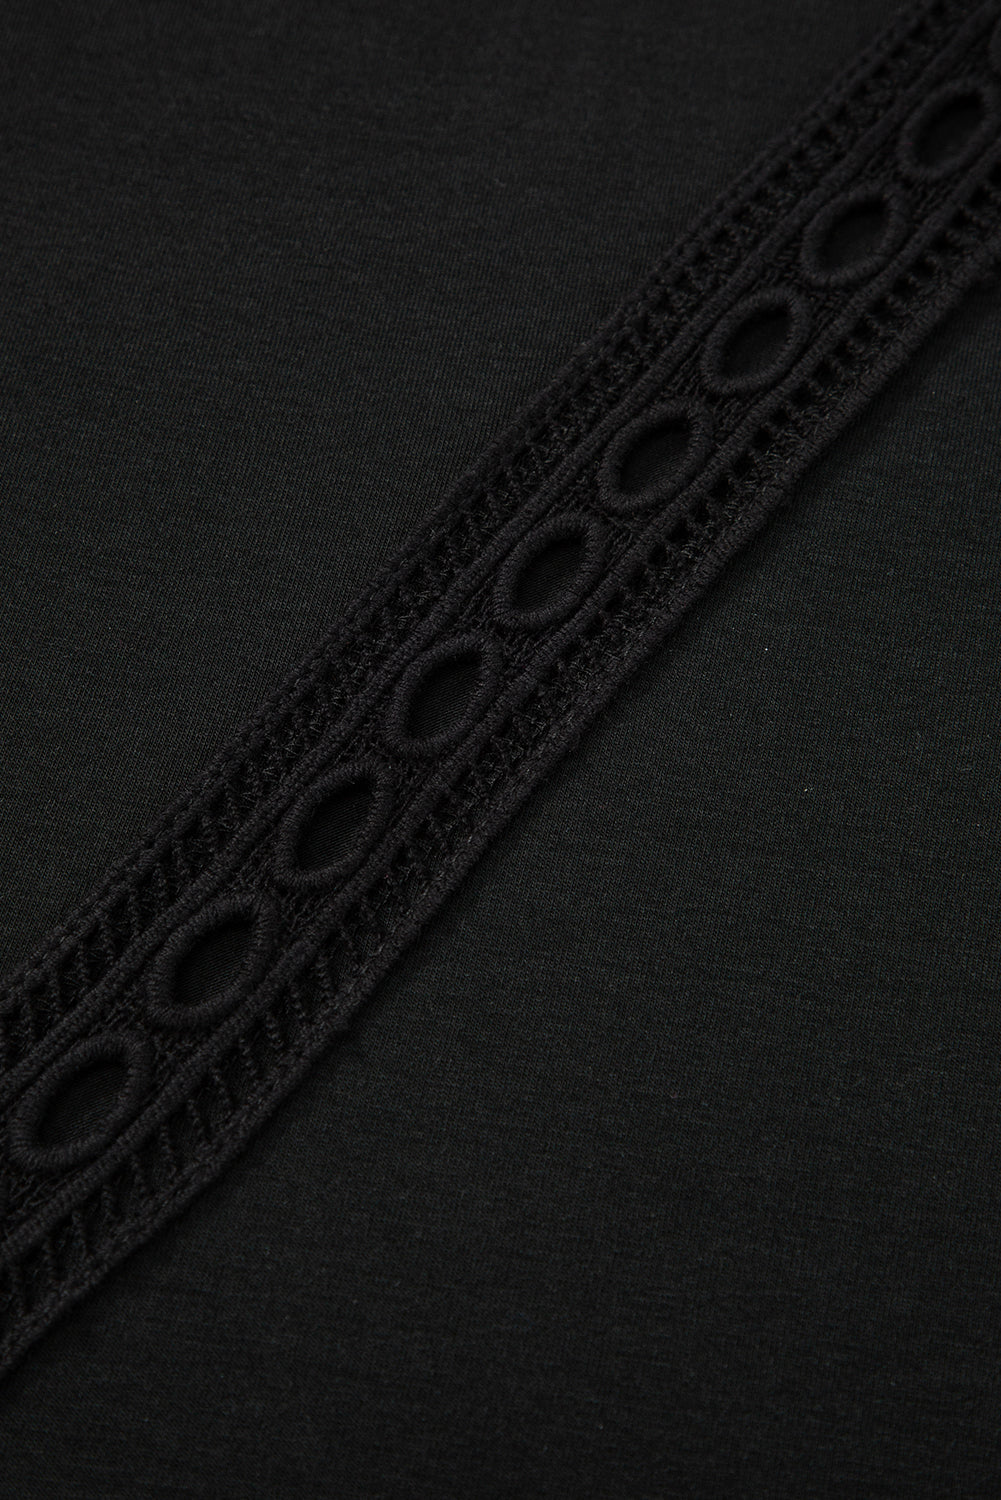 Črna velika majica s kvačkanimi čipkastimi detajli